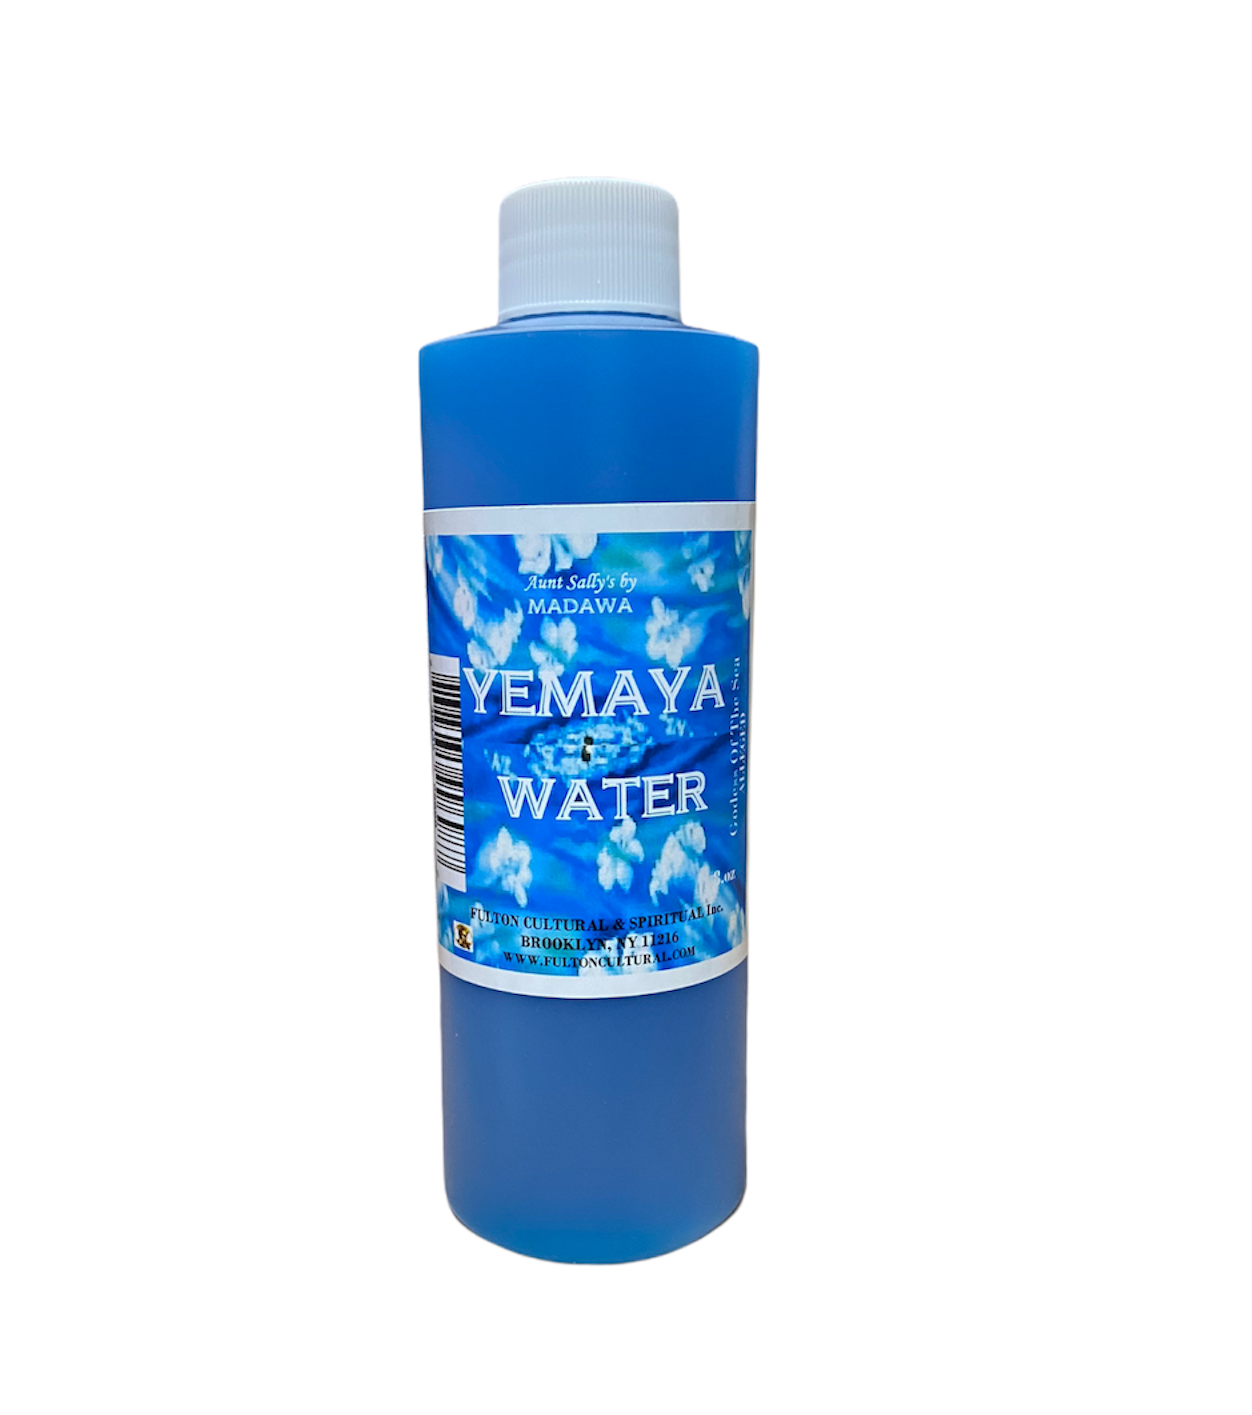 Yemaya Water